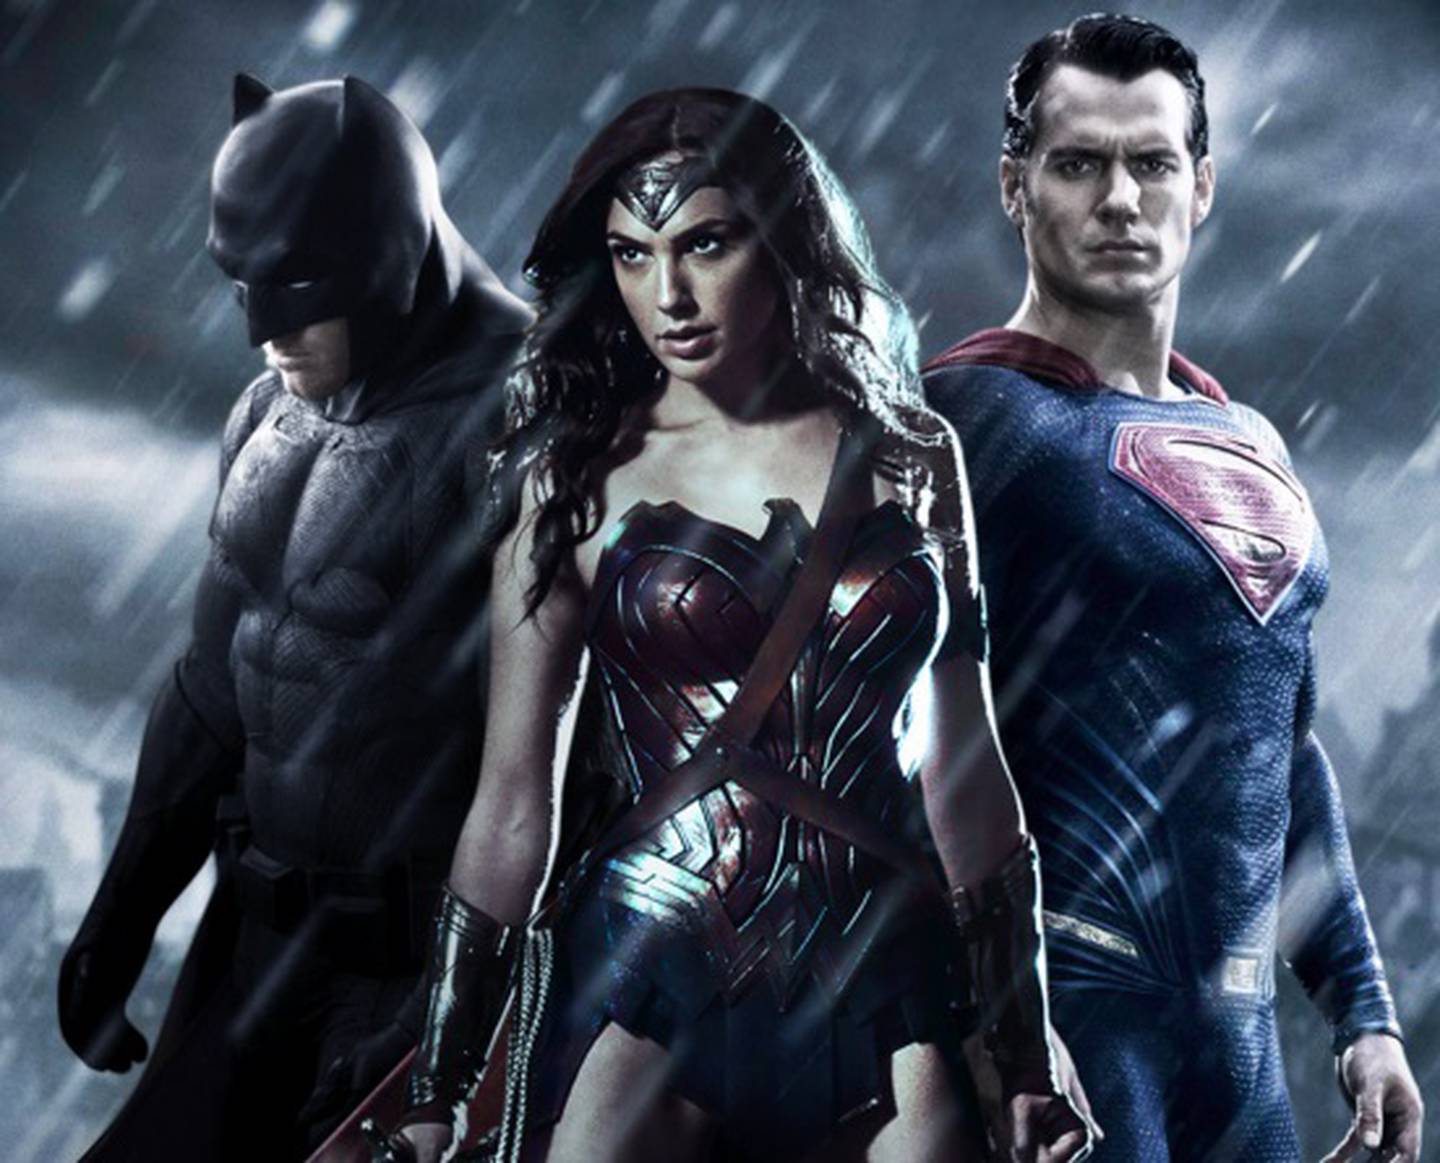 Primeras críticas golpean fuerte a 'Batman vs. Superman' | La Nación